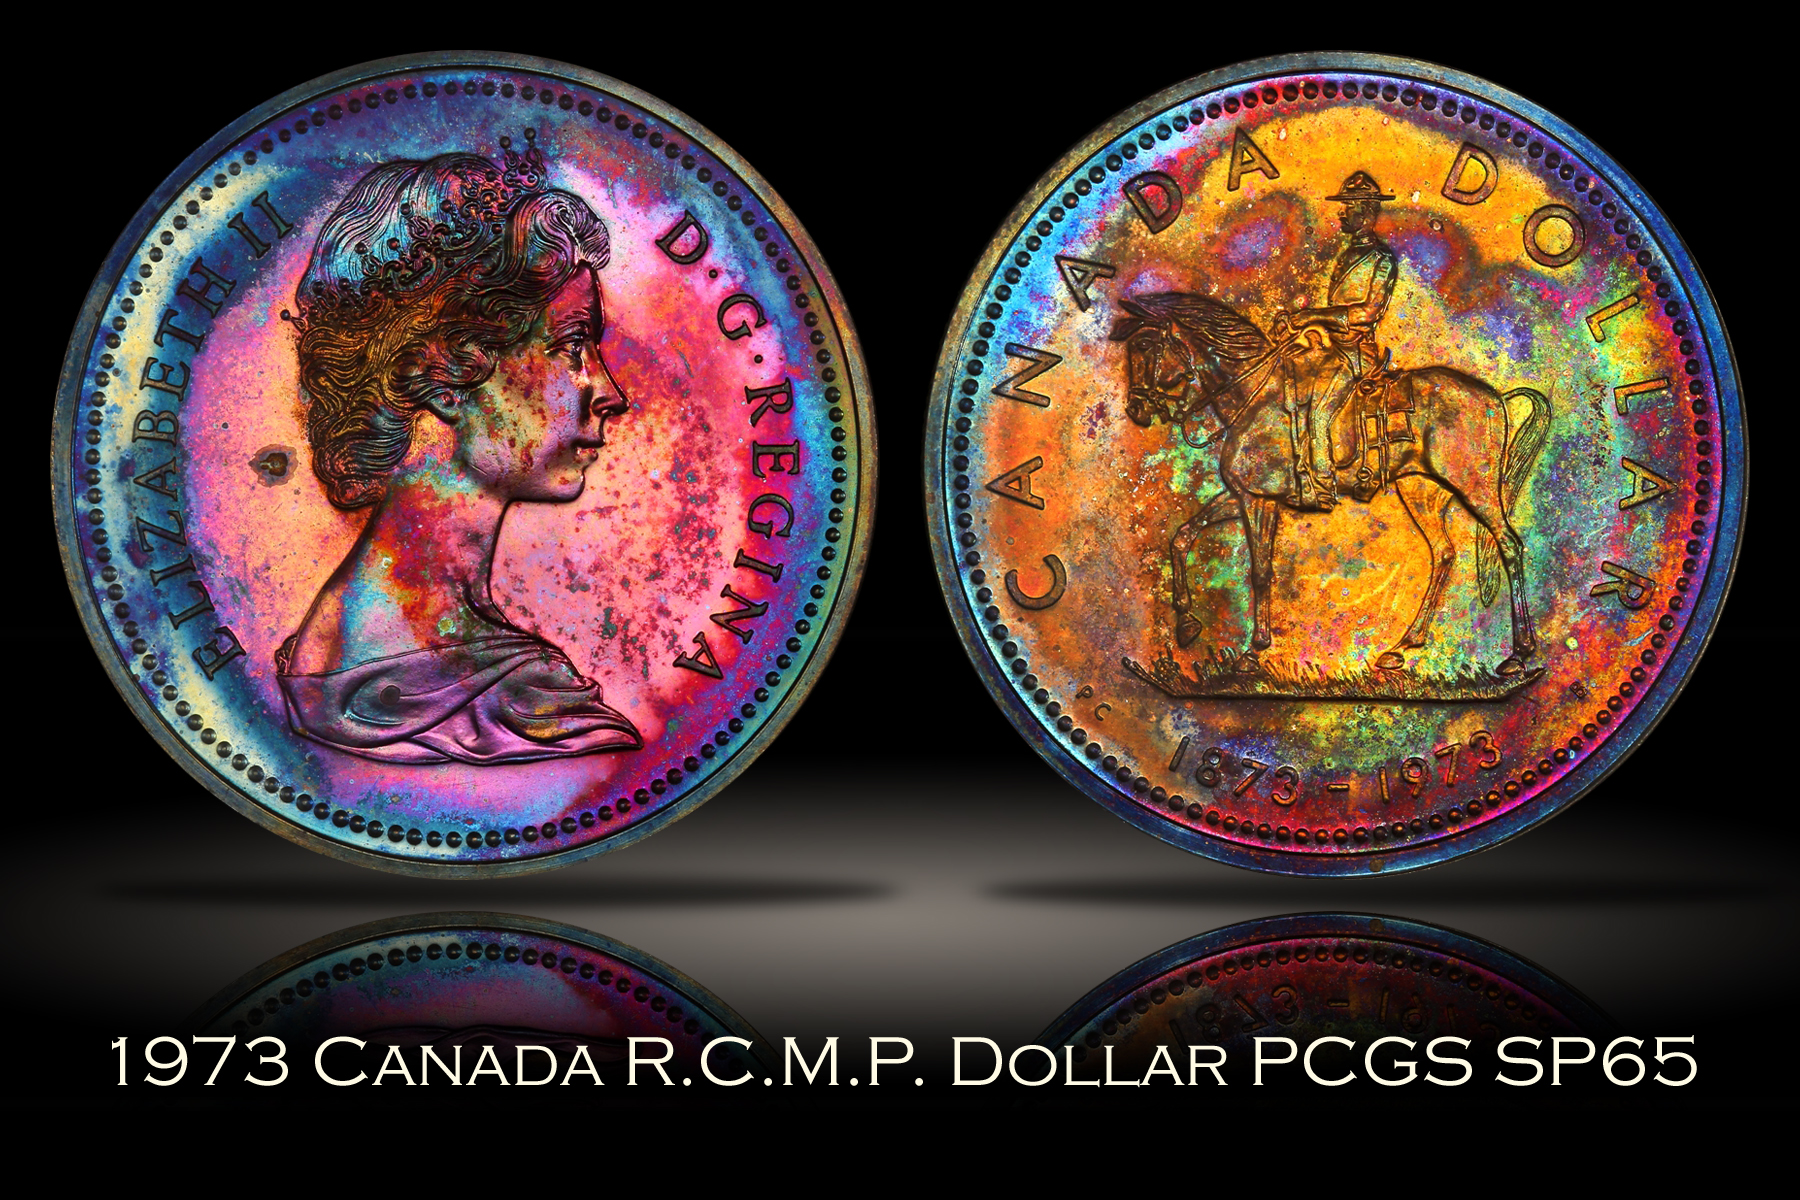 1973 Canada R.C.M.P. Silver Dollar PCGS SP65